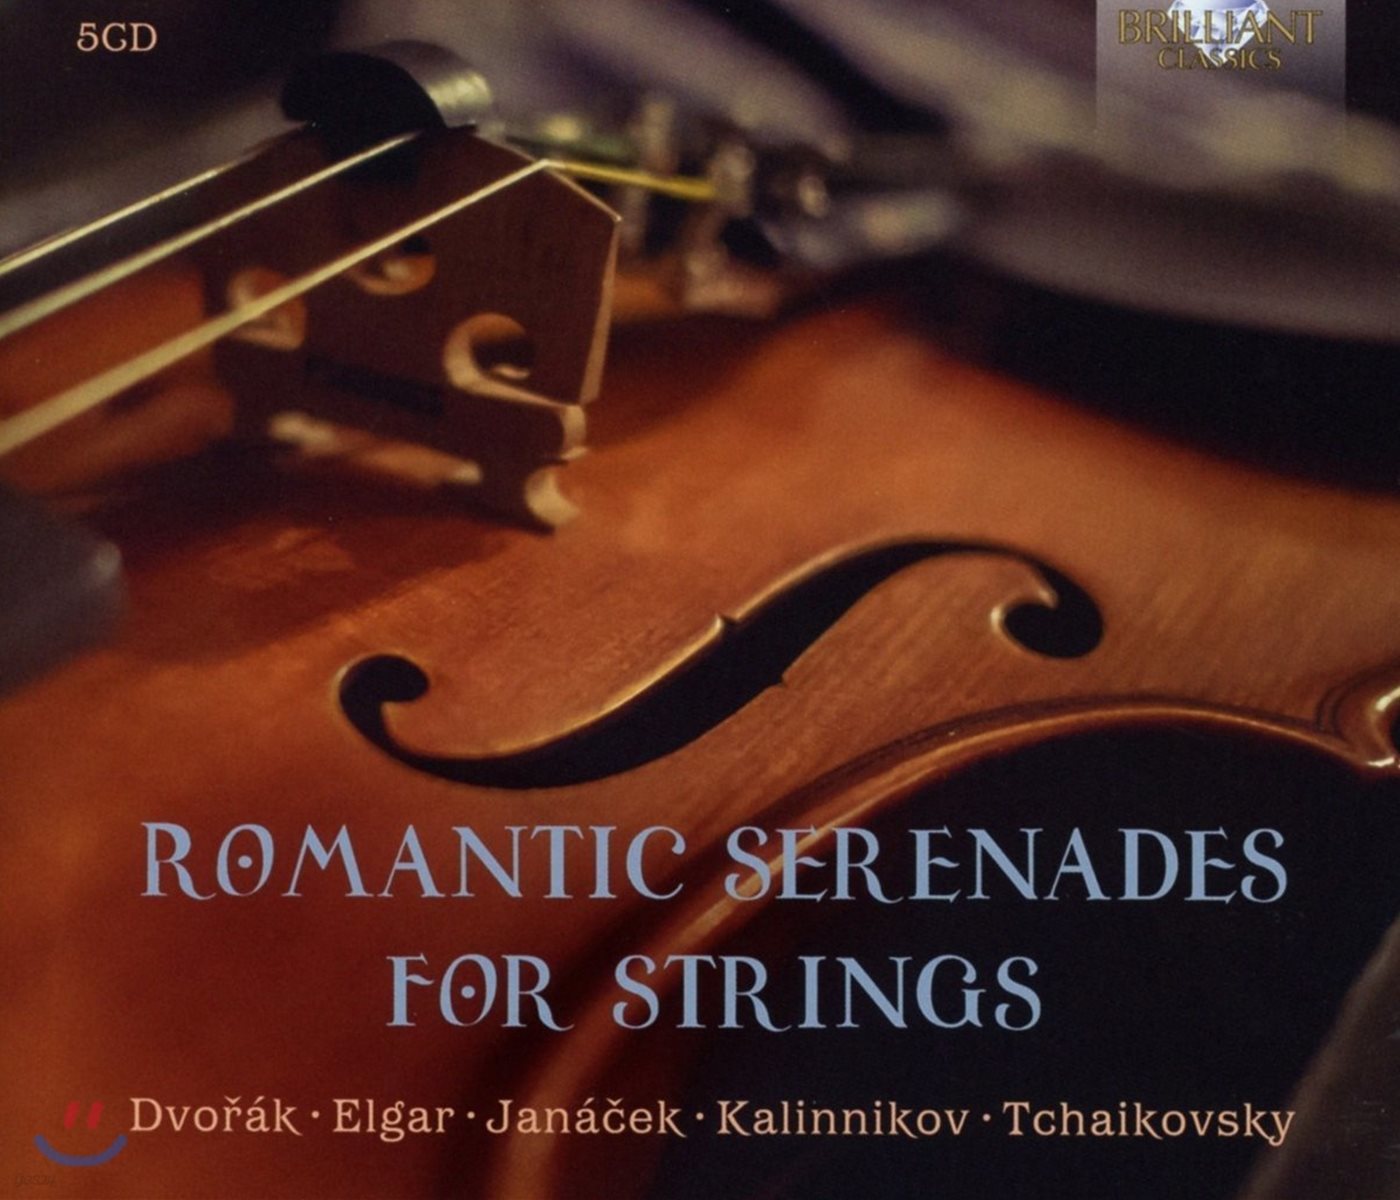 현을 위한 로맨틱 세레나데 모음집 (Romantic Serenades for Strings)